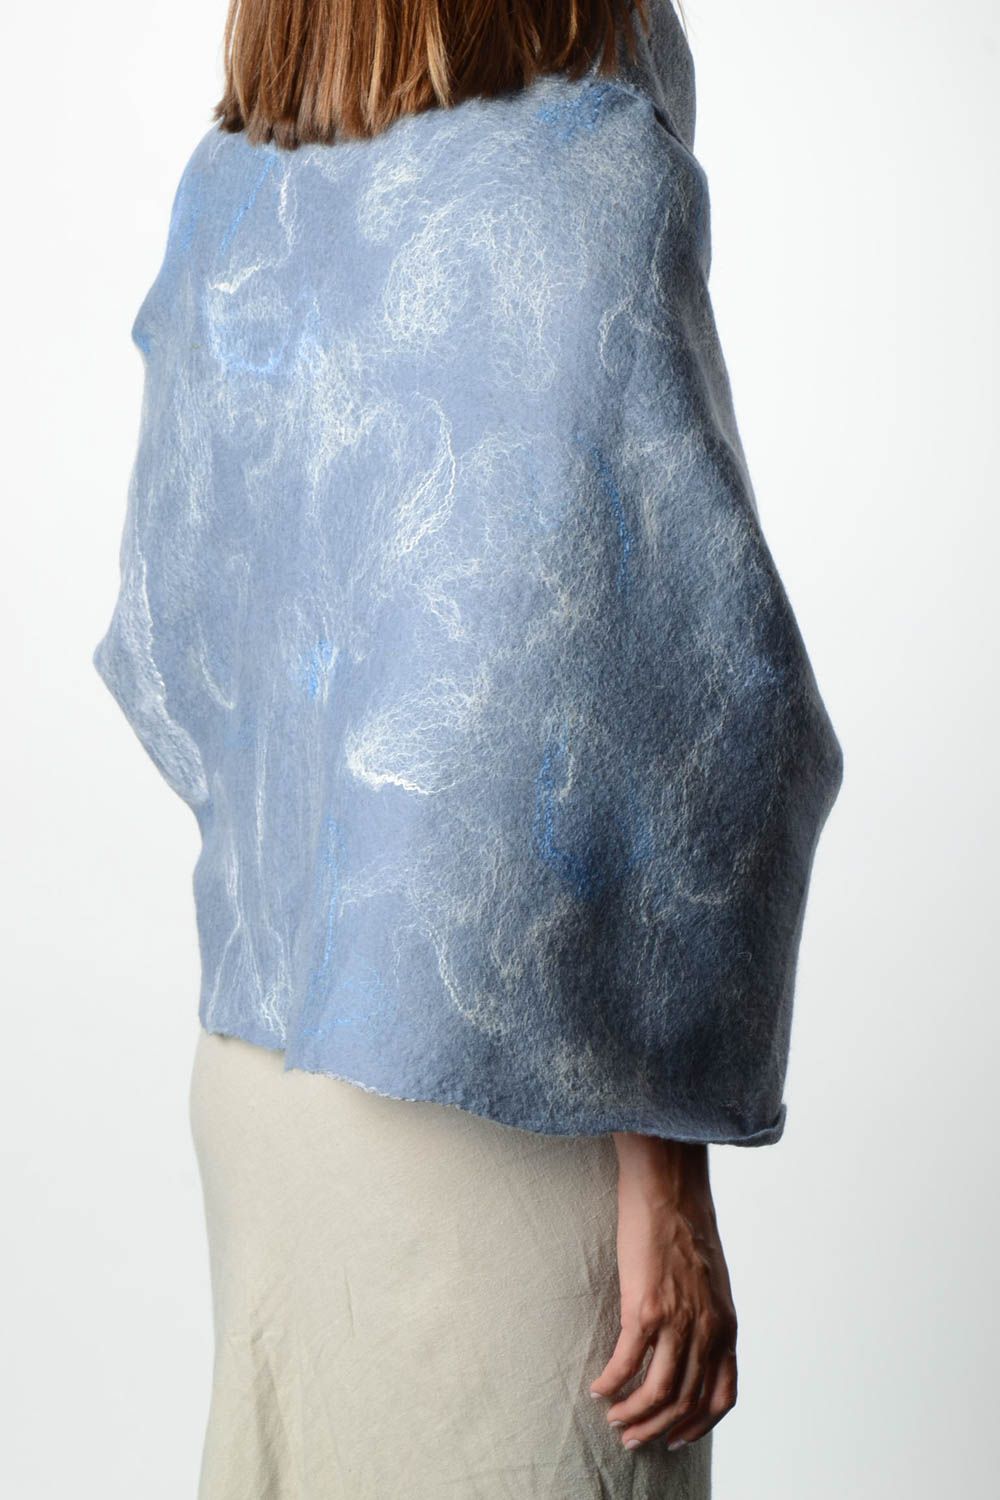 Женский шарф палантин ручной работы валяный палантин из шерсти голубой фото 2